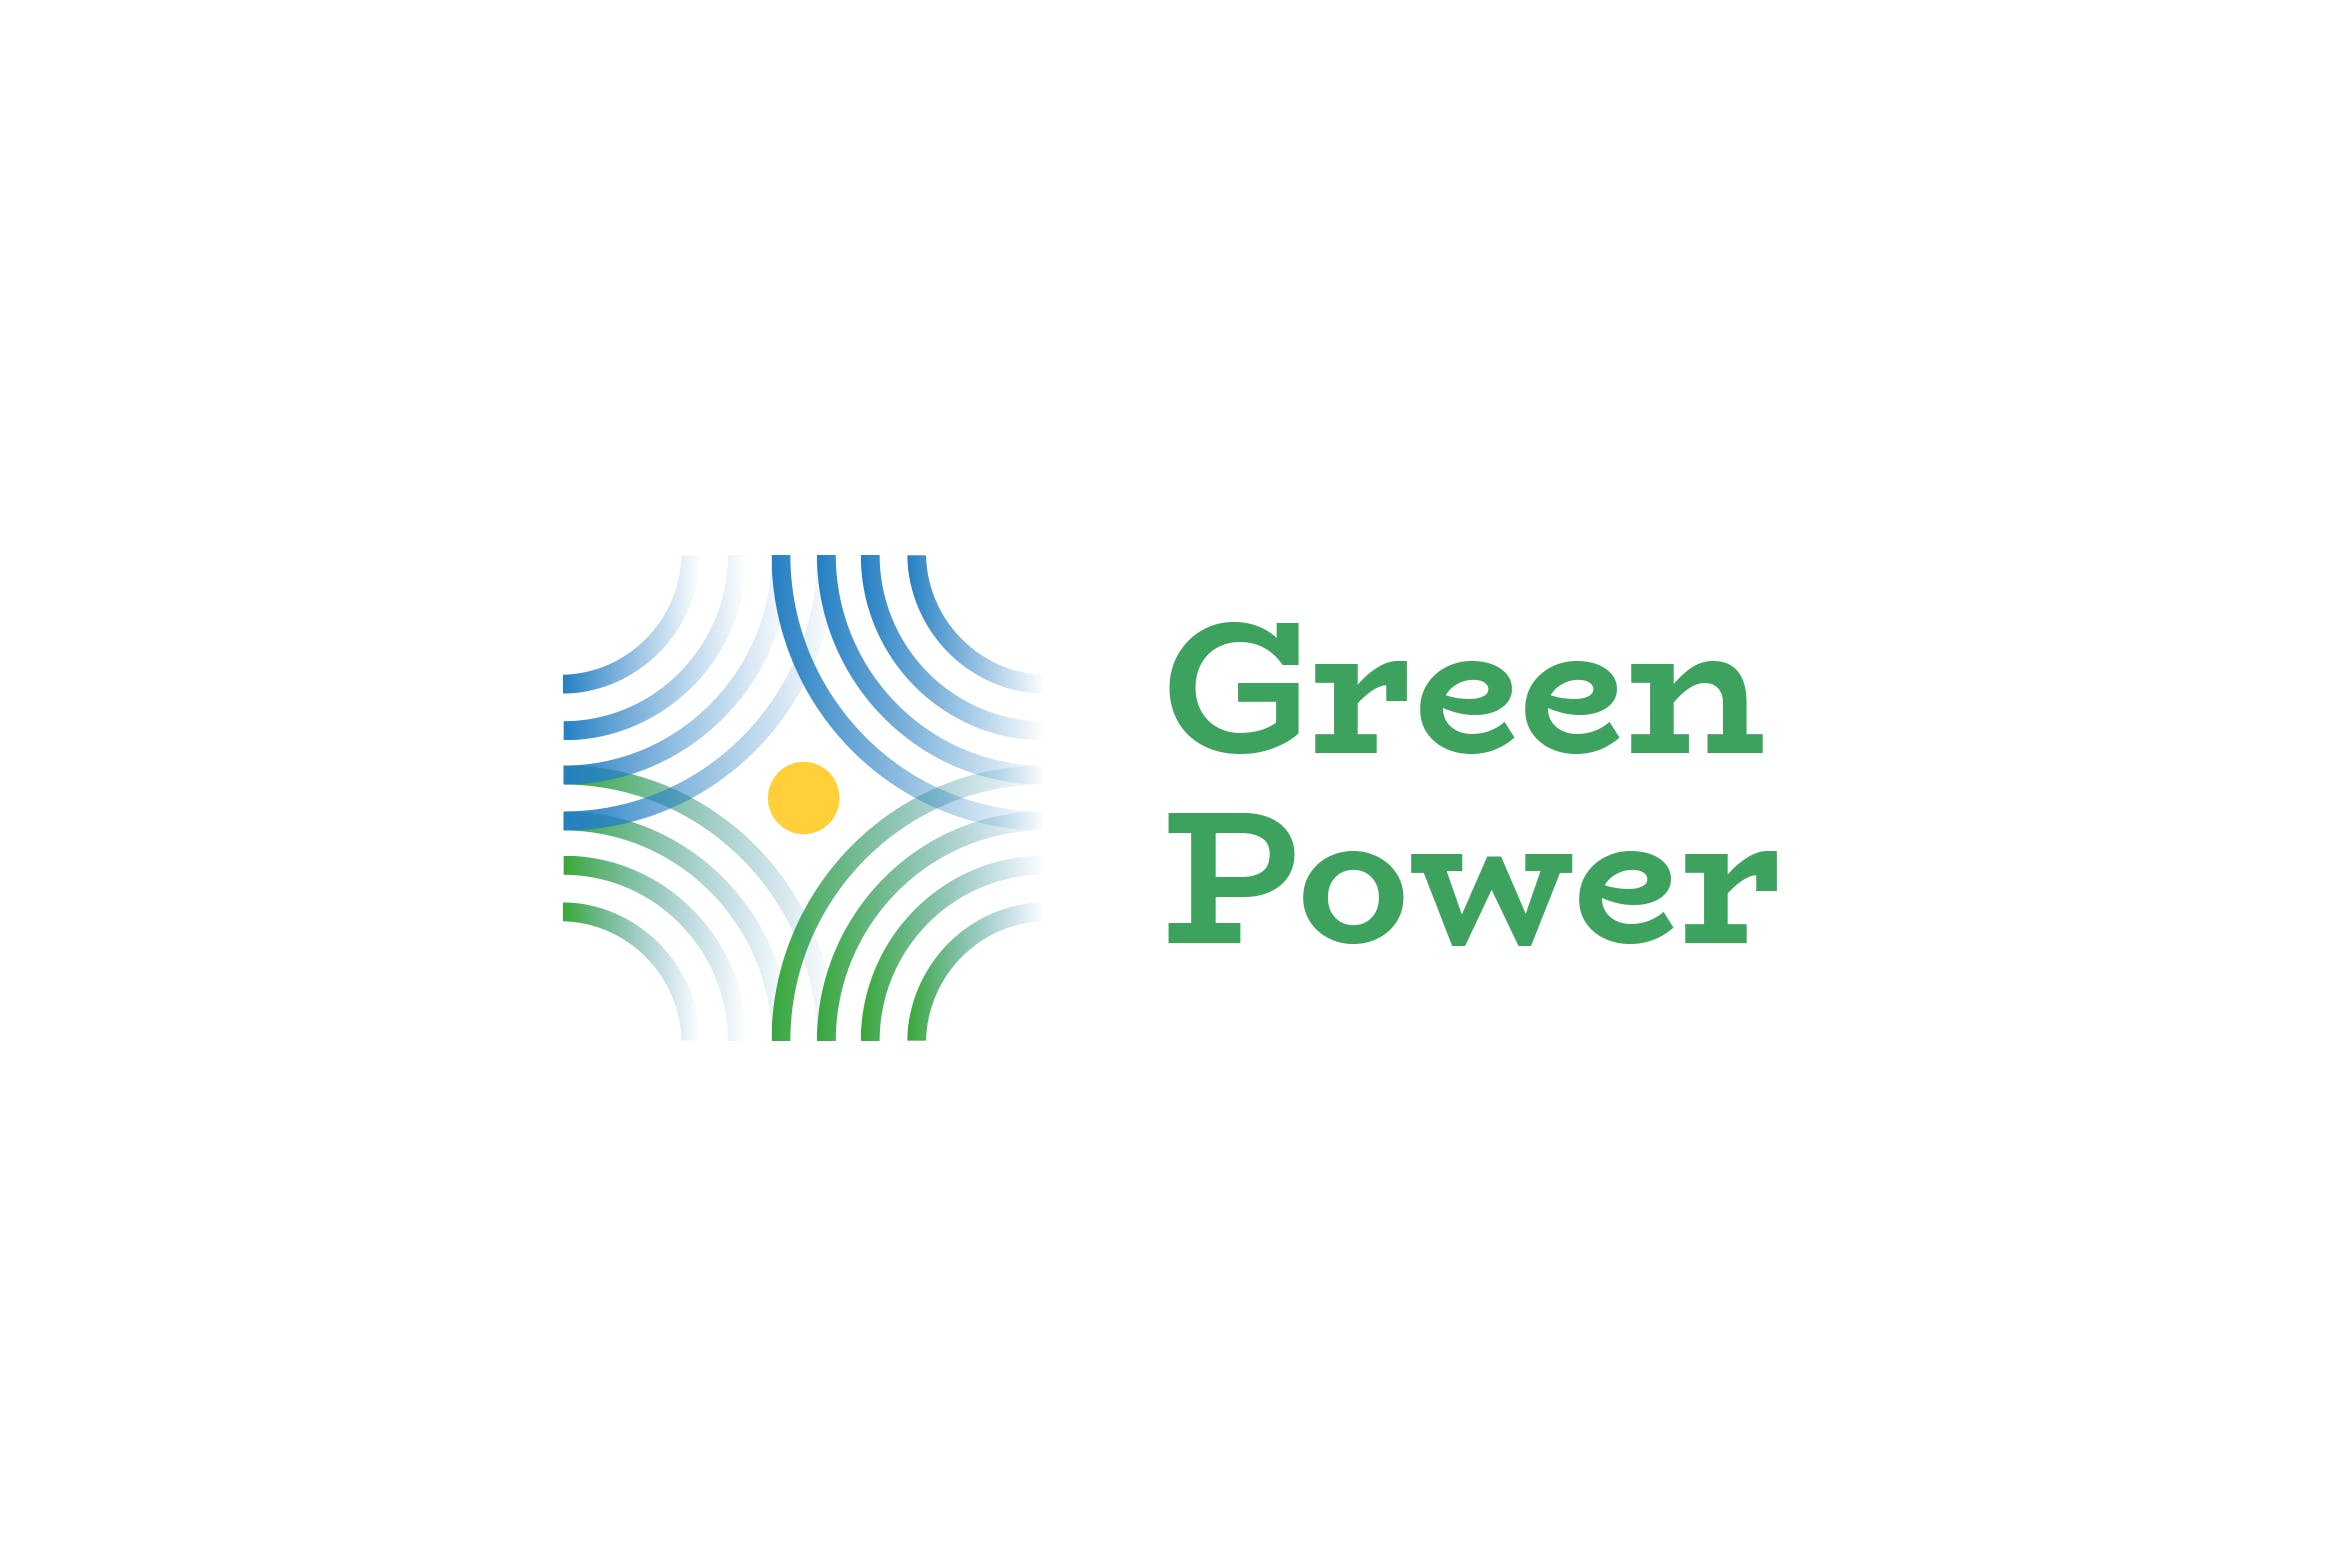 绿色能源&新能源品牌Logo设计16图库精选模板 Green Power Logo插图